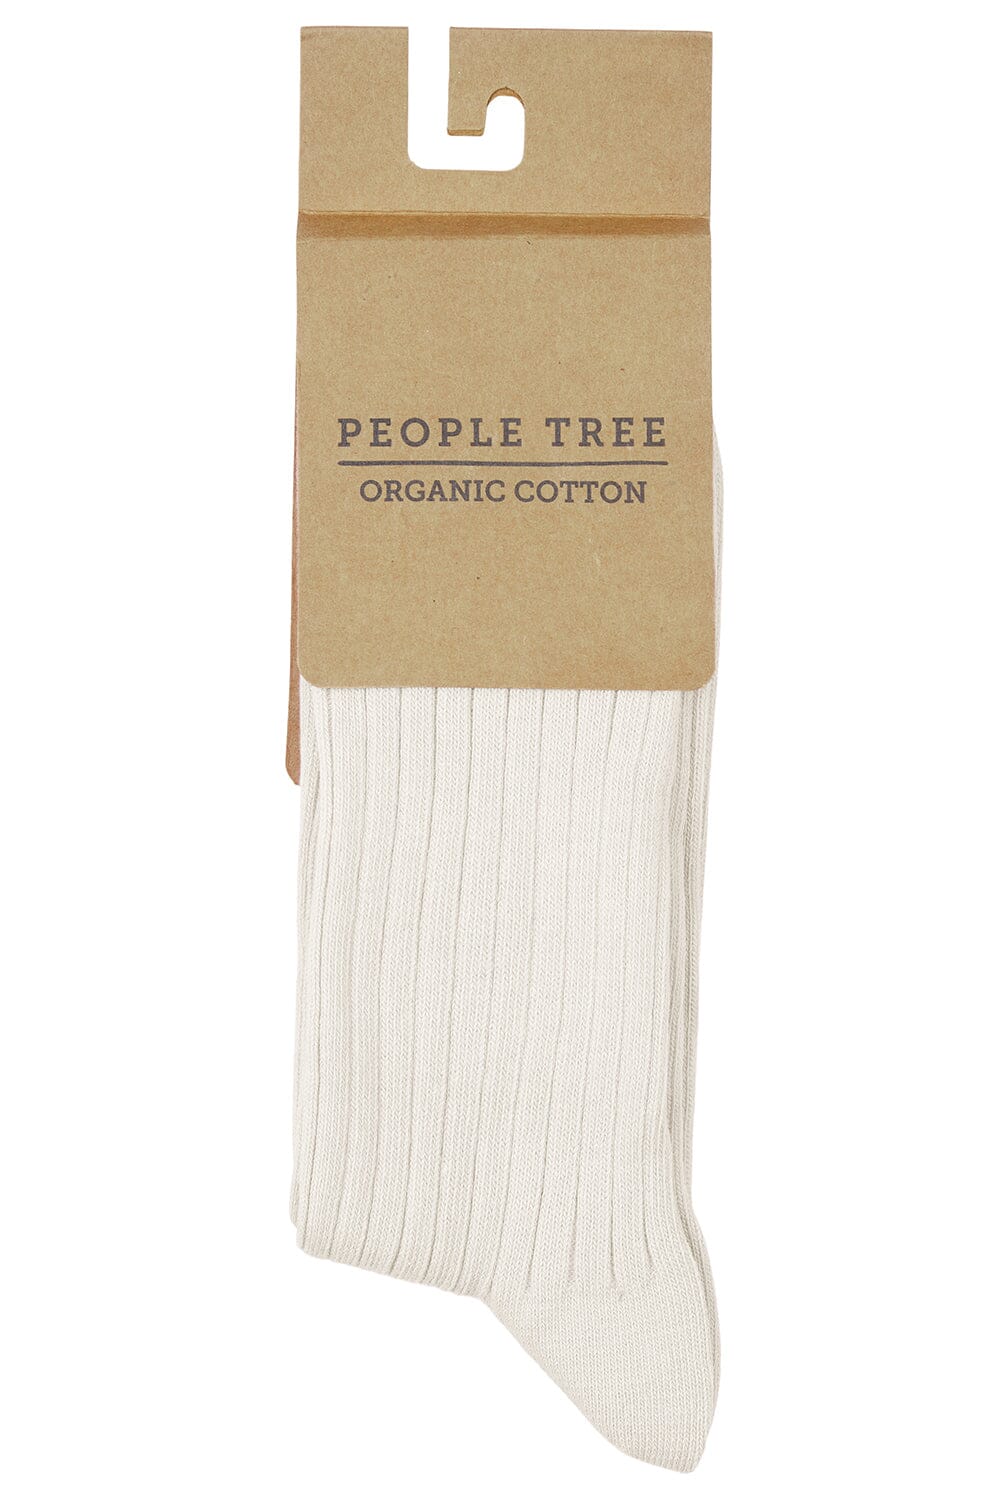 People Tree Ribsokker bomuld - Weekendbee - sustainable